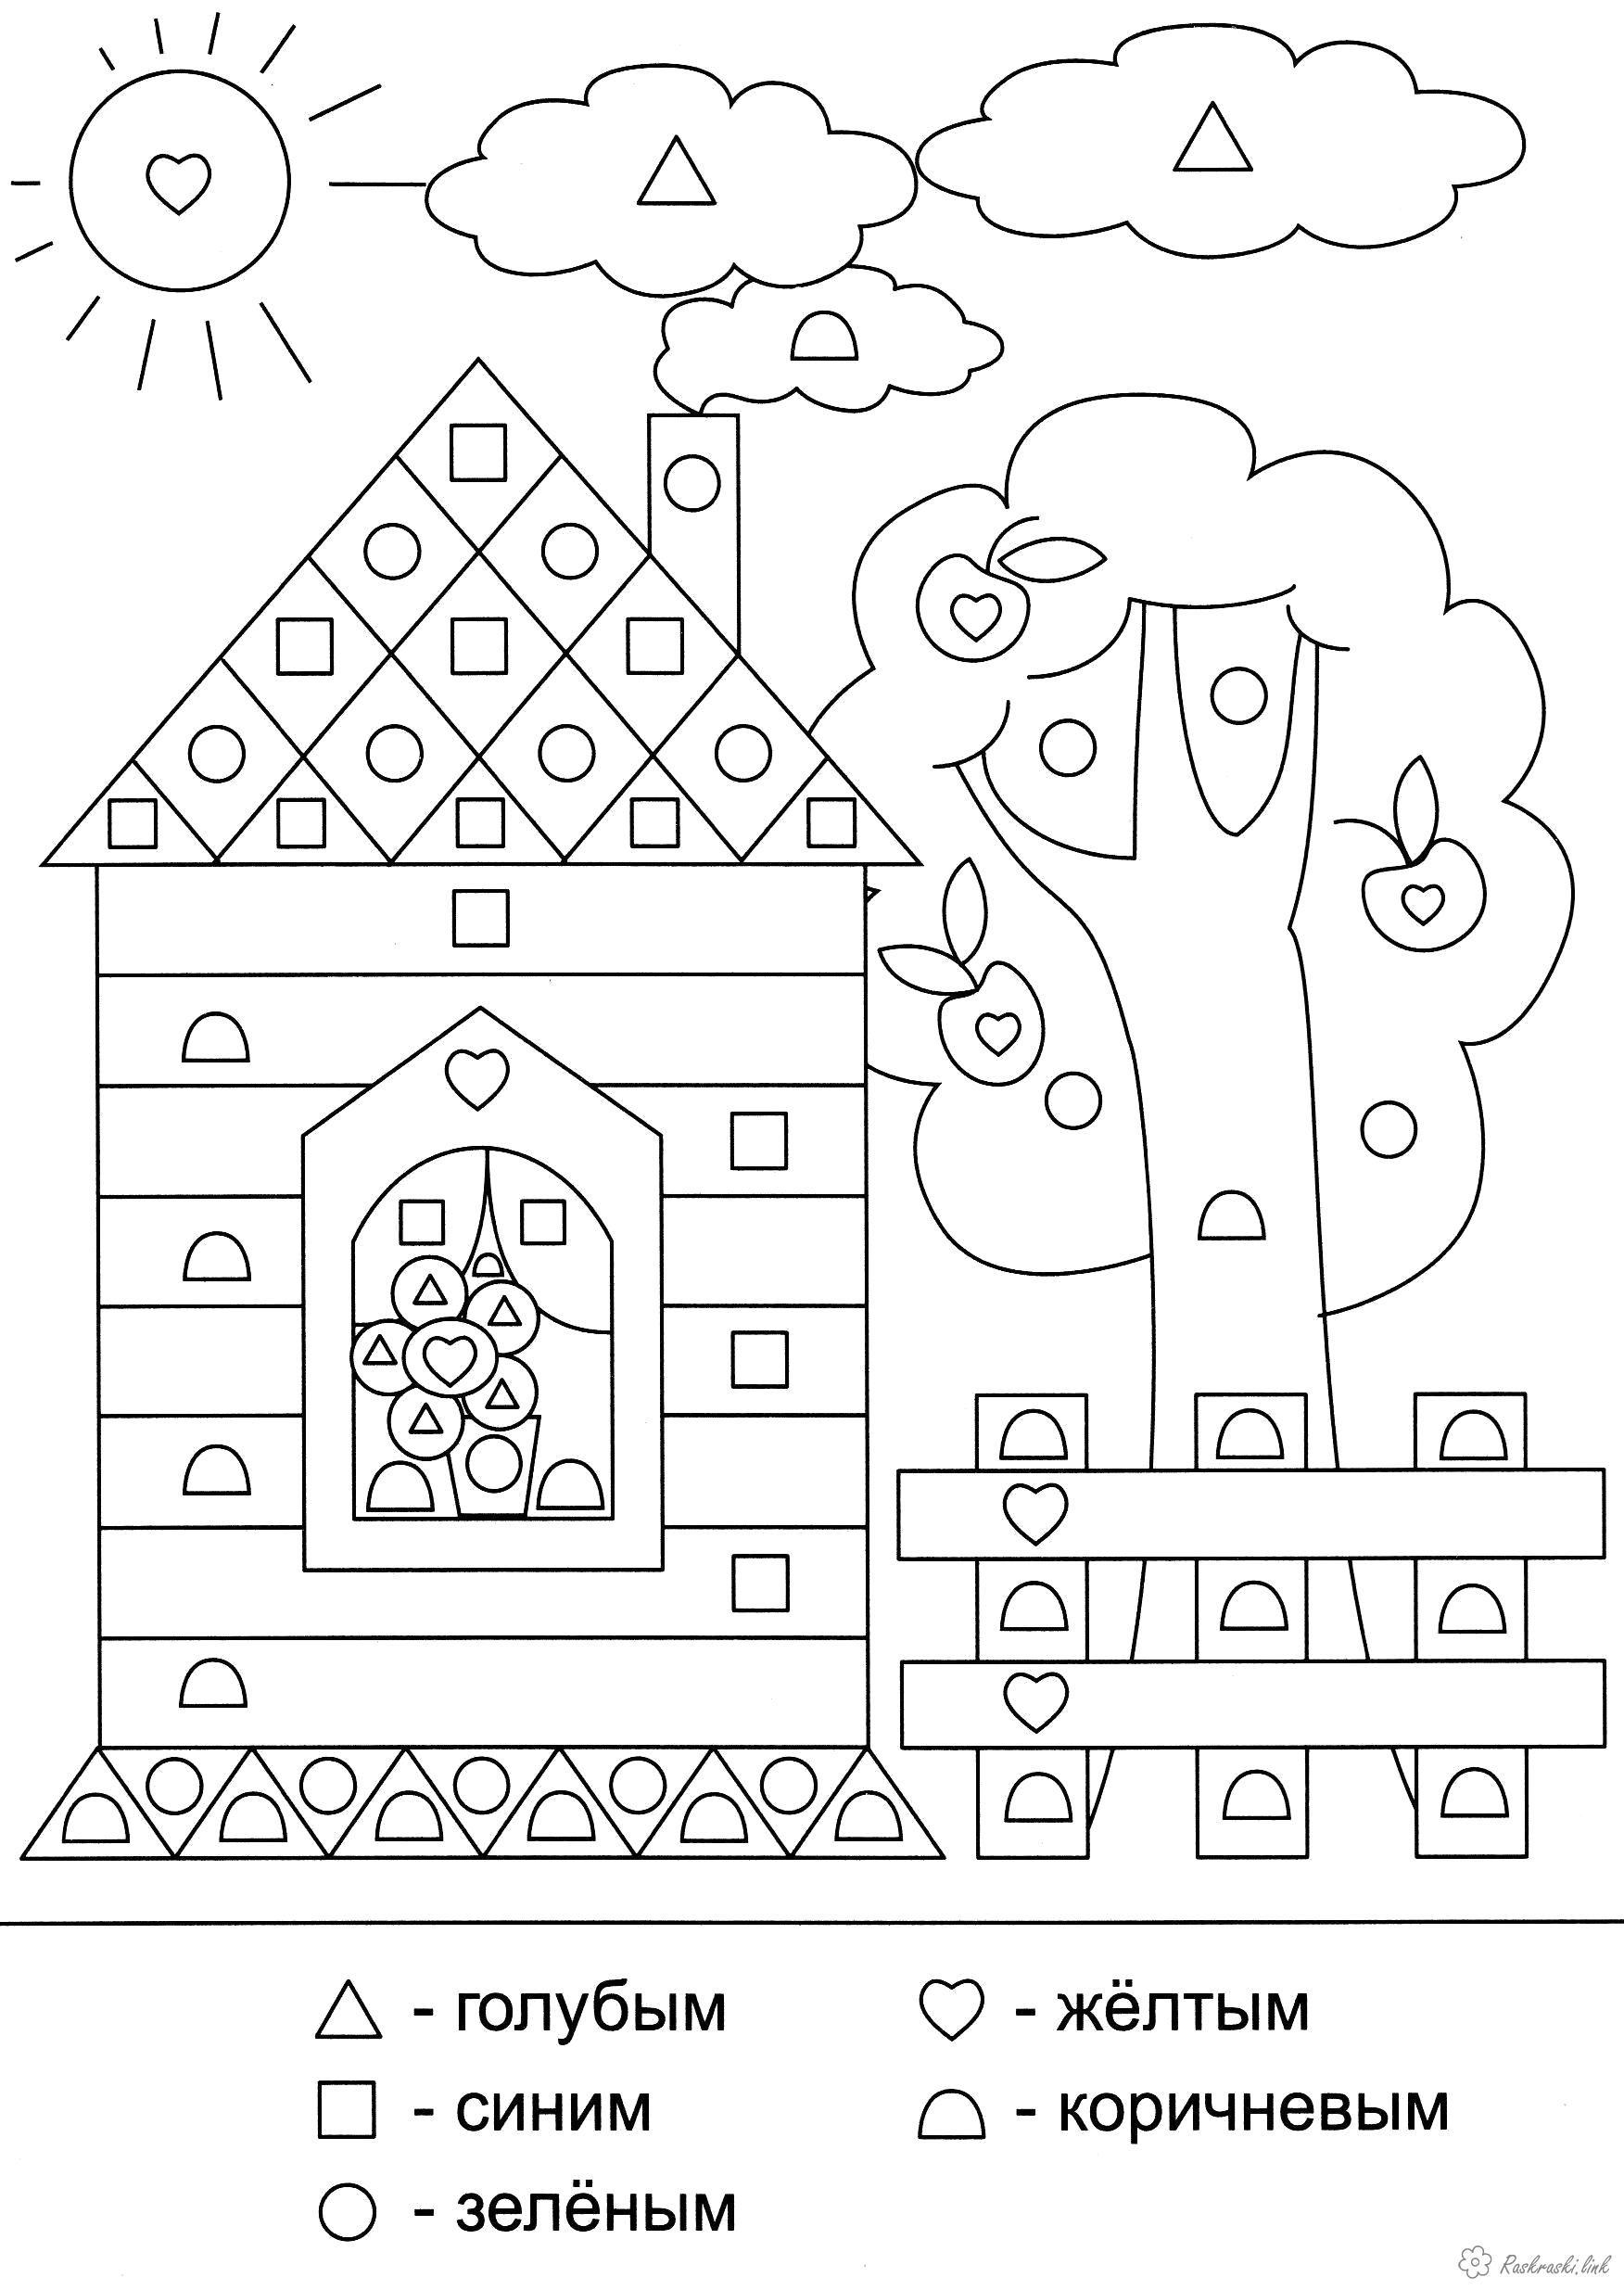 Название: Раскраска Раскраски дерево солнце дом забор дерево облока треугольник квадрат круг. Категория: геометрические фигуры. Теги: квадрат, треугольник.